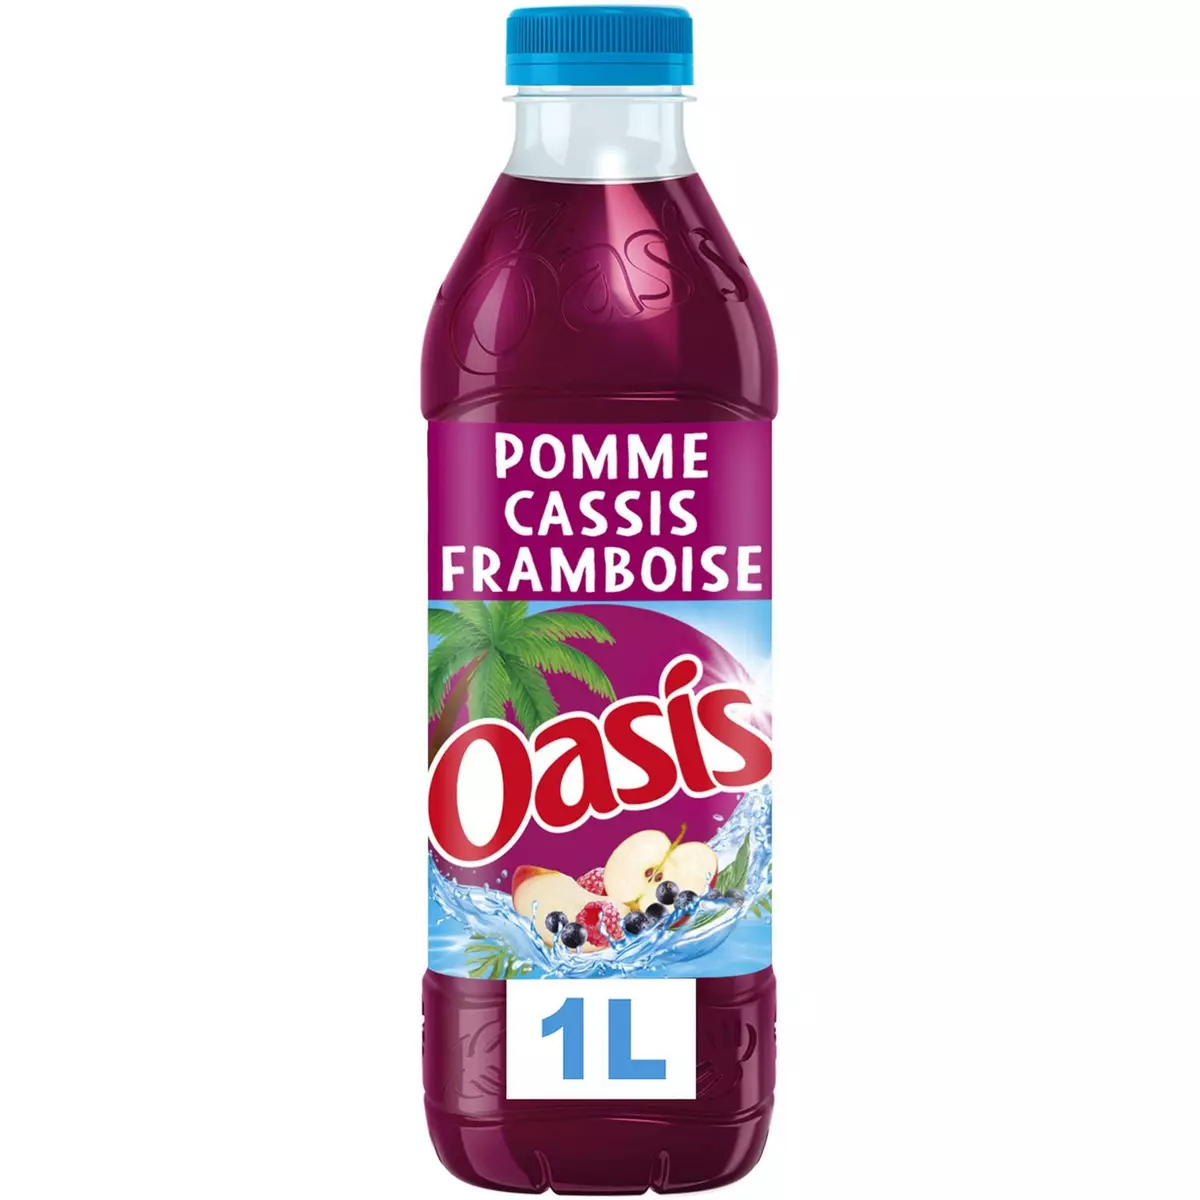 OASIS Boisson aux fruits saveur pomme cassis framboise 1l